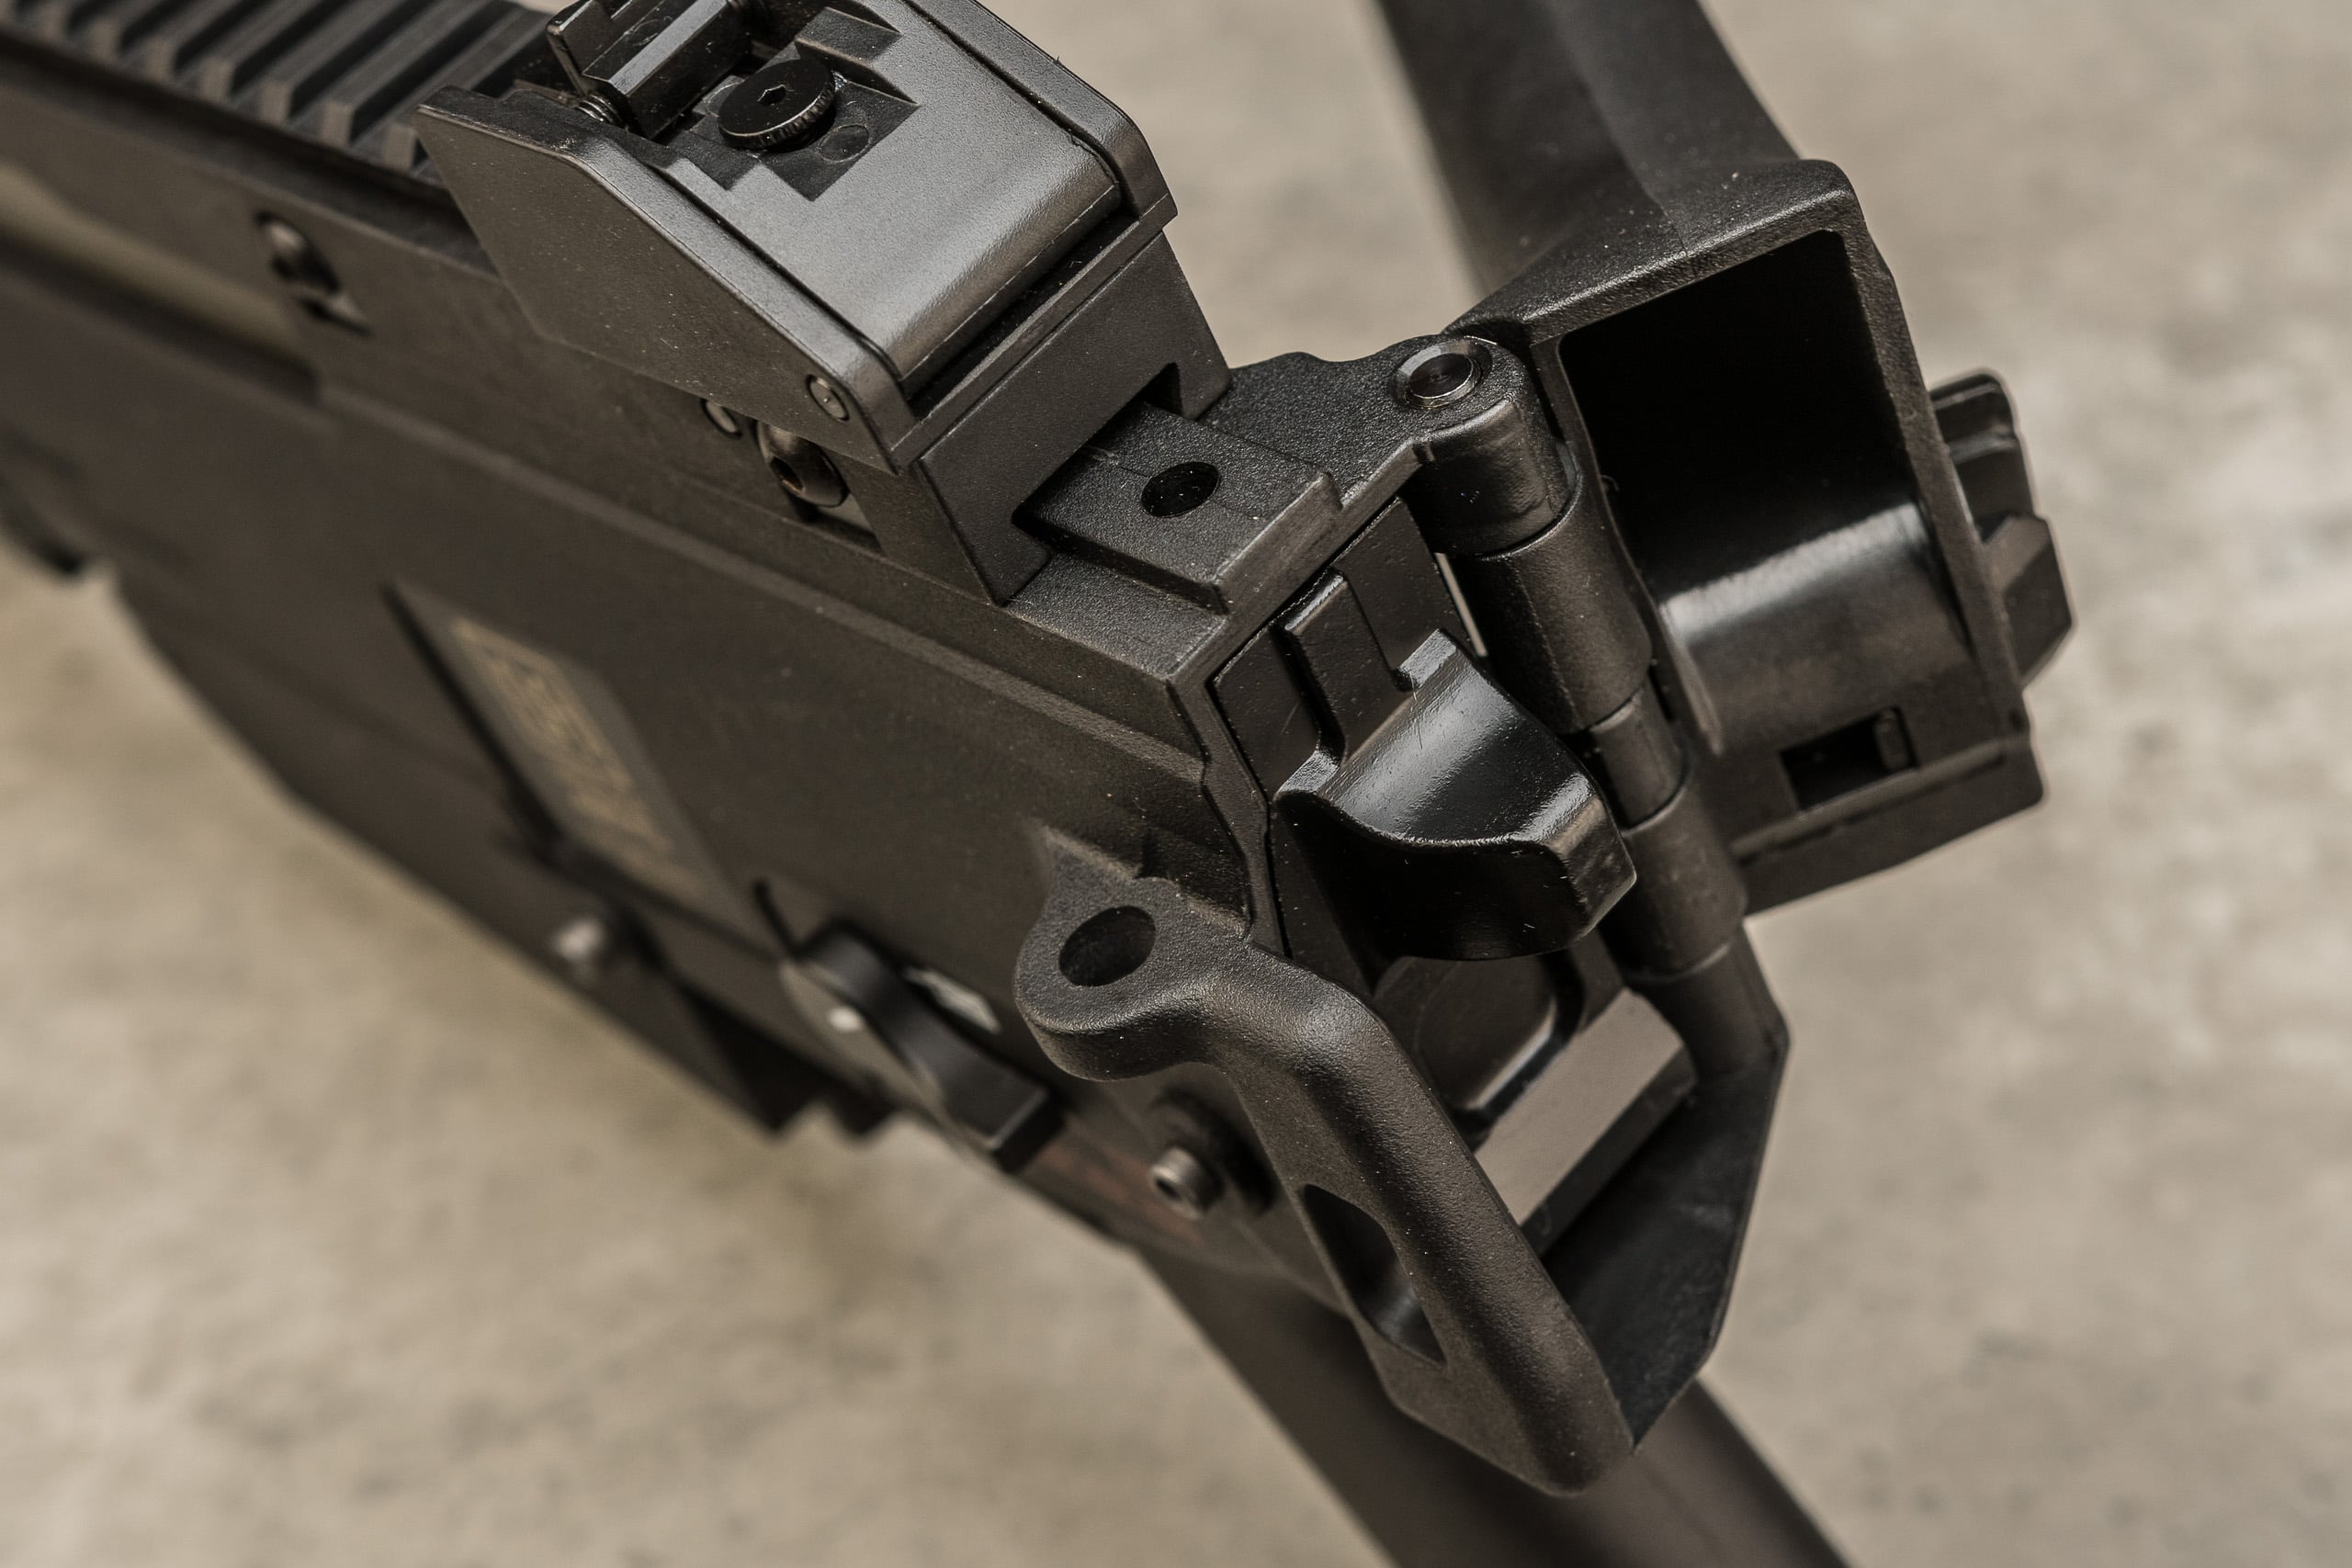 Specna Arms SA-G11 KeyMod EBB Carbine Replica